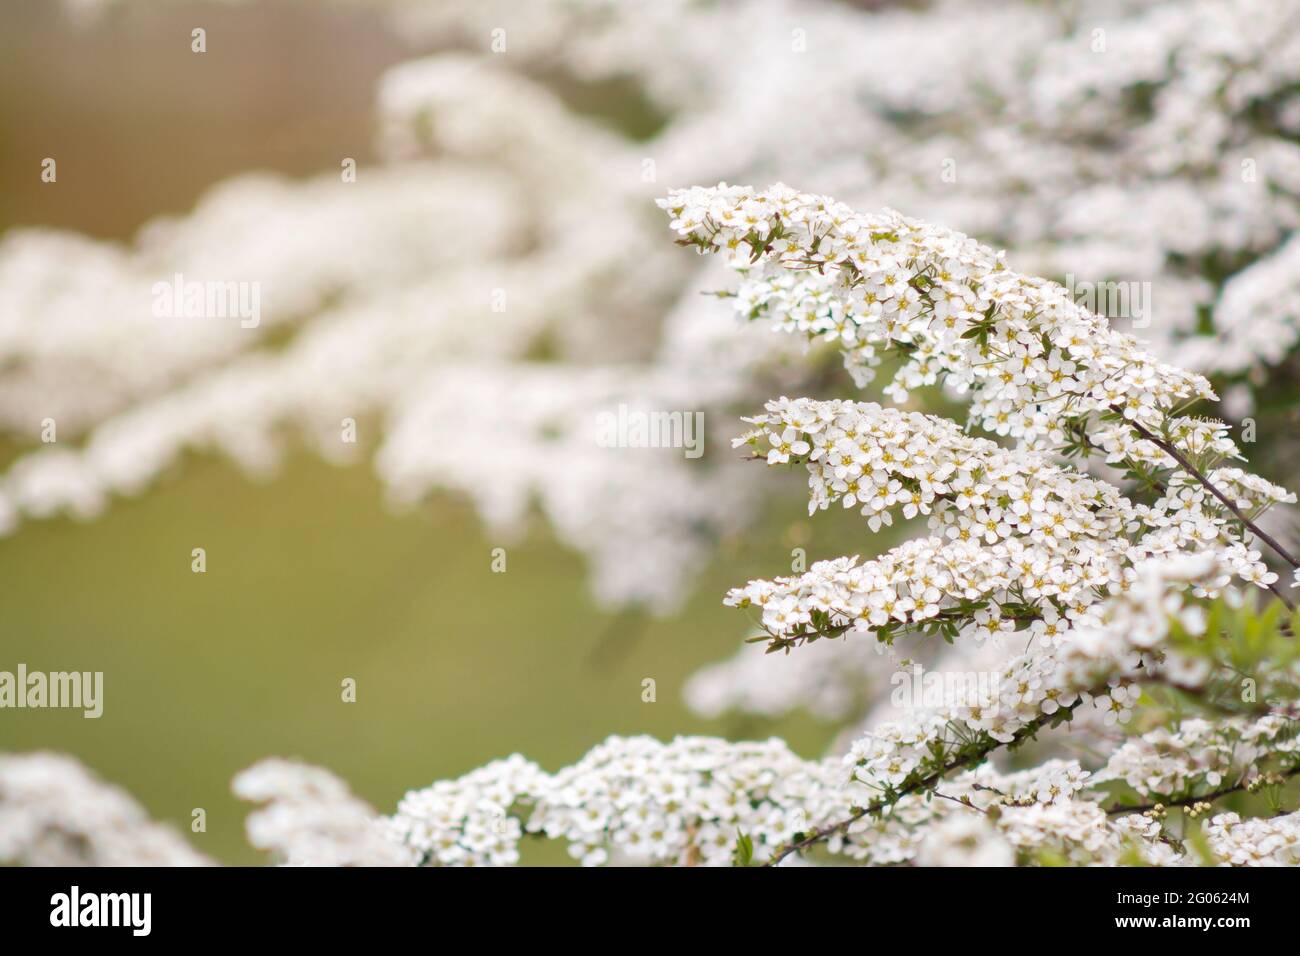 Spirea oder Spiraea prunifolia blühender Strauch mit weißen Blüten, auch bekannt als Mädesüßigkeiten oder Brautkranz im Frühling Stockfoto